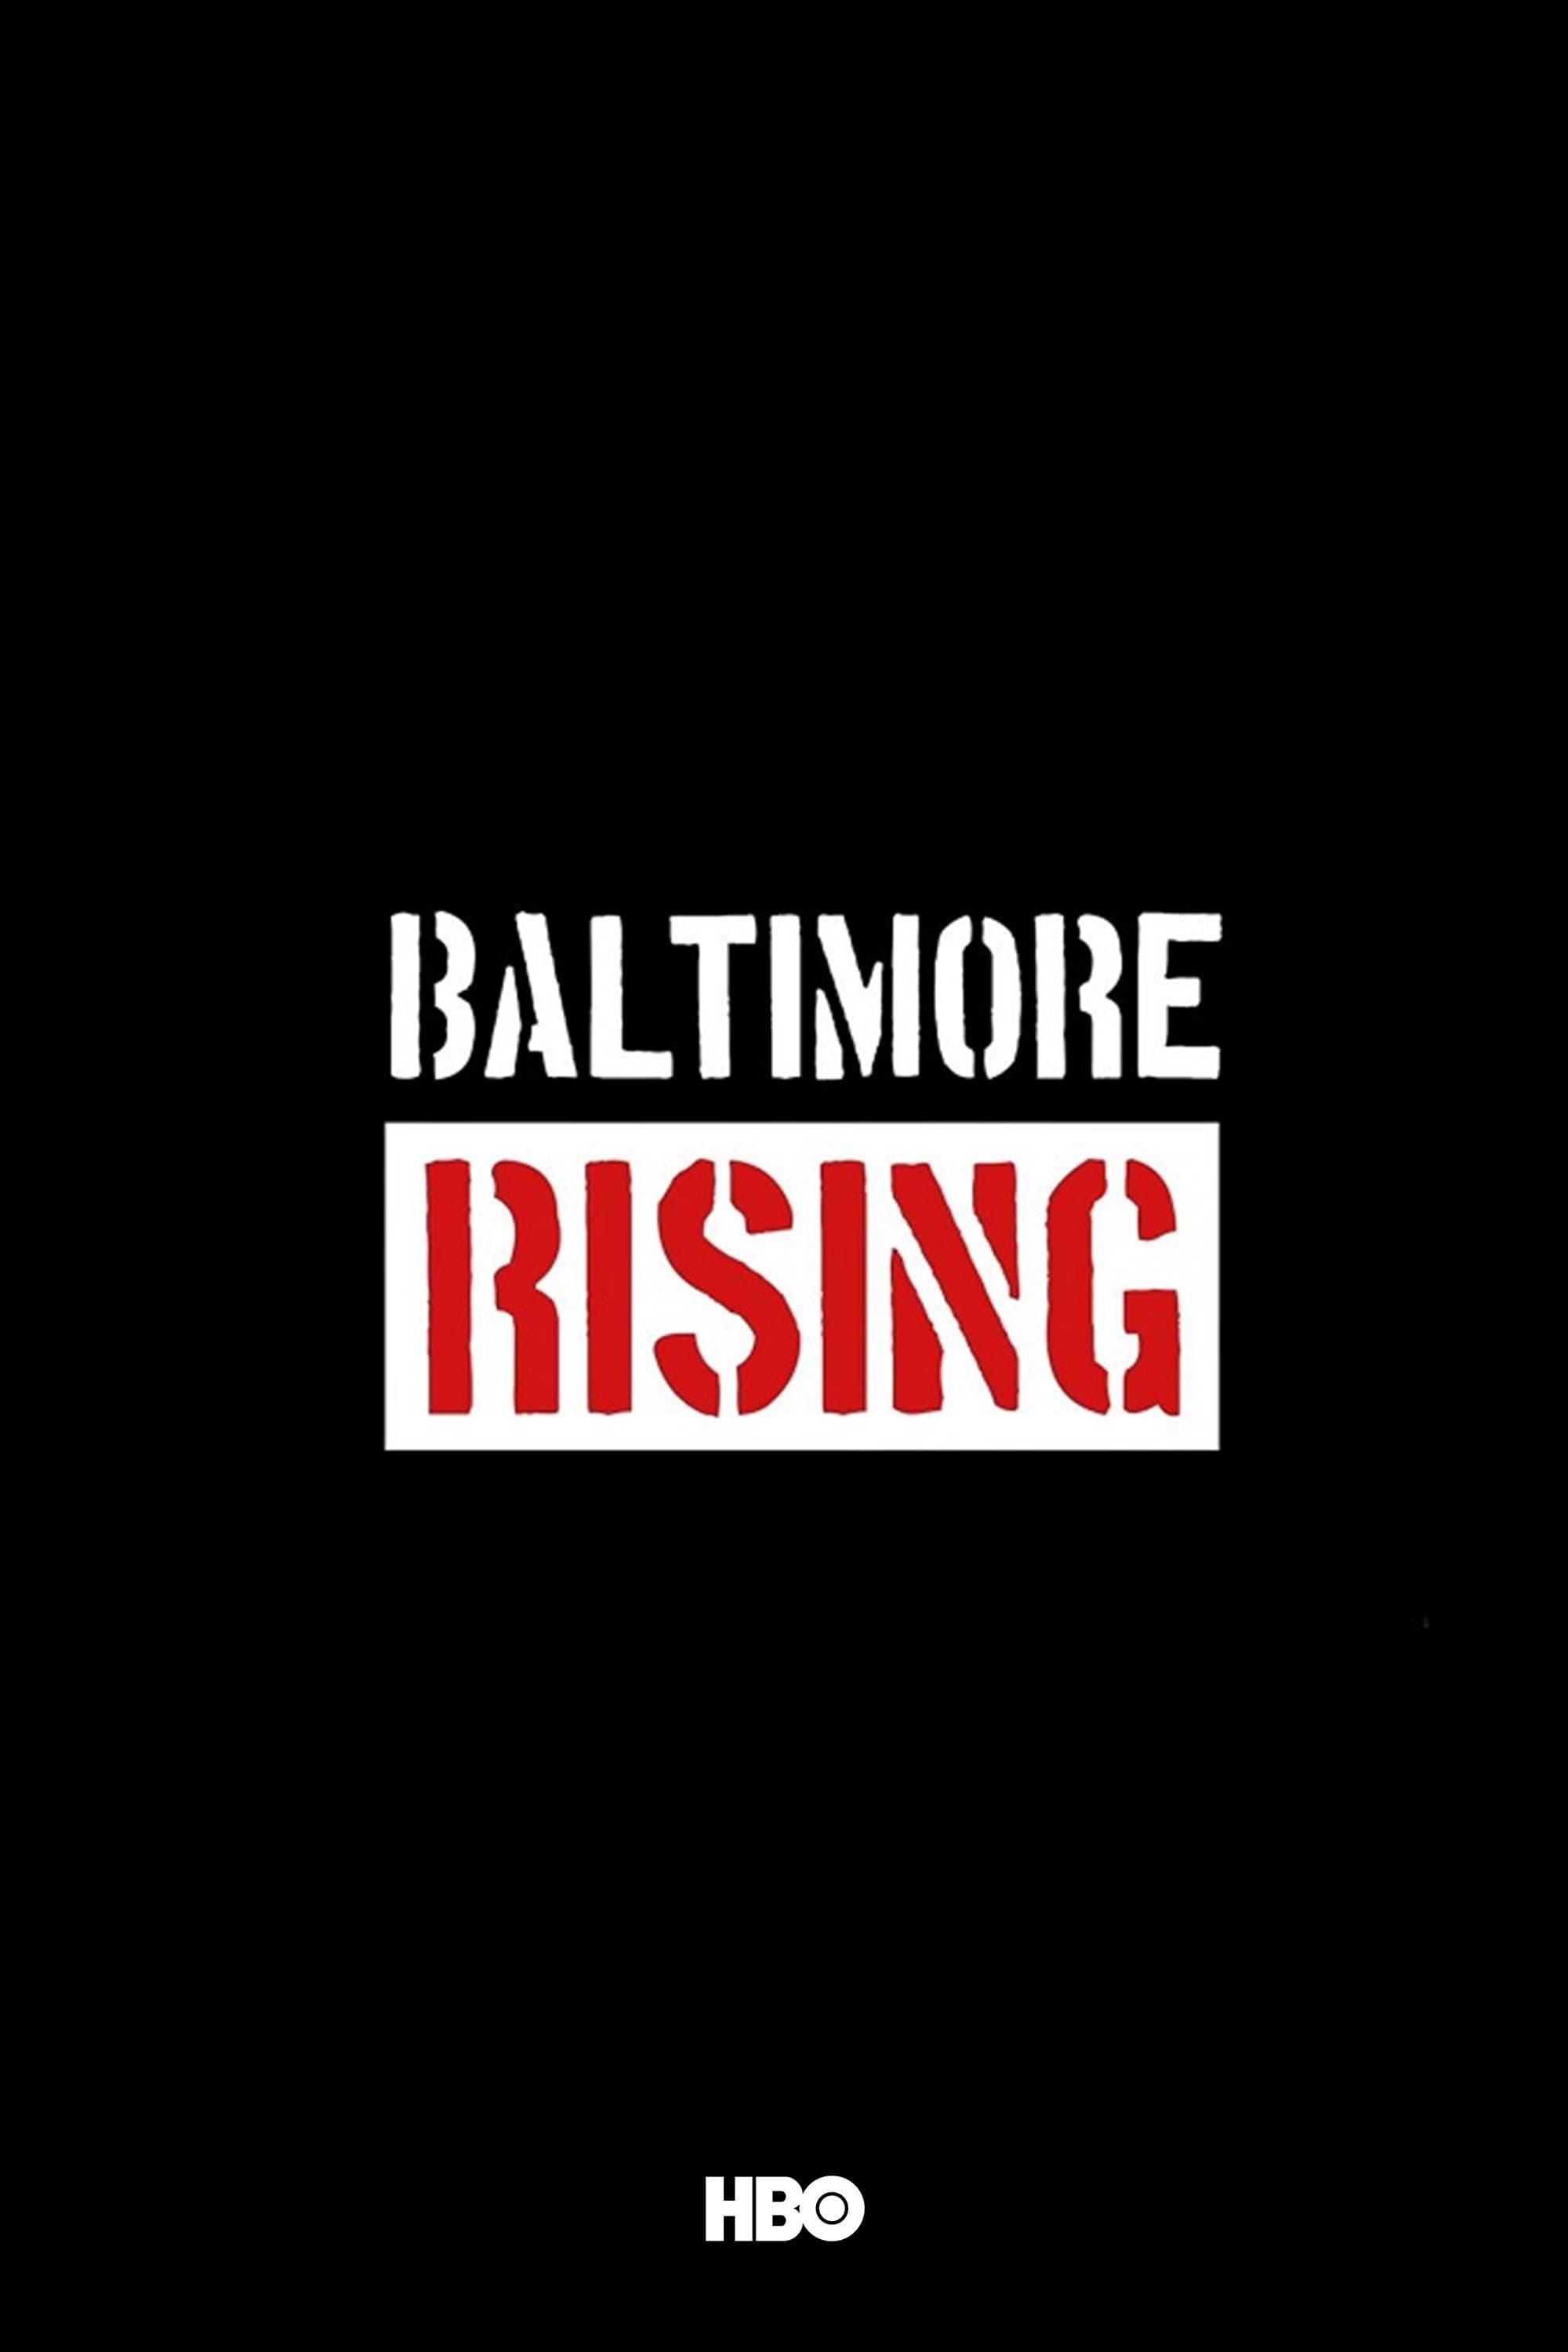 Baltimore Rising poster